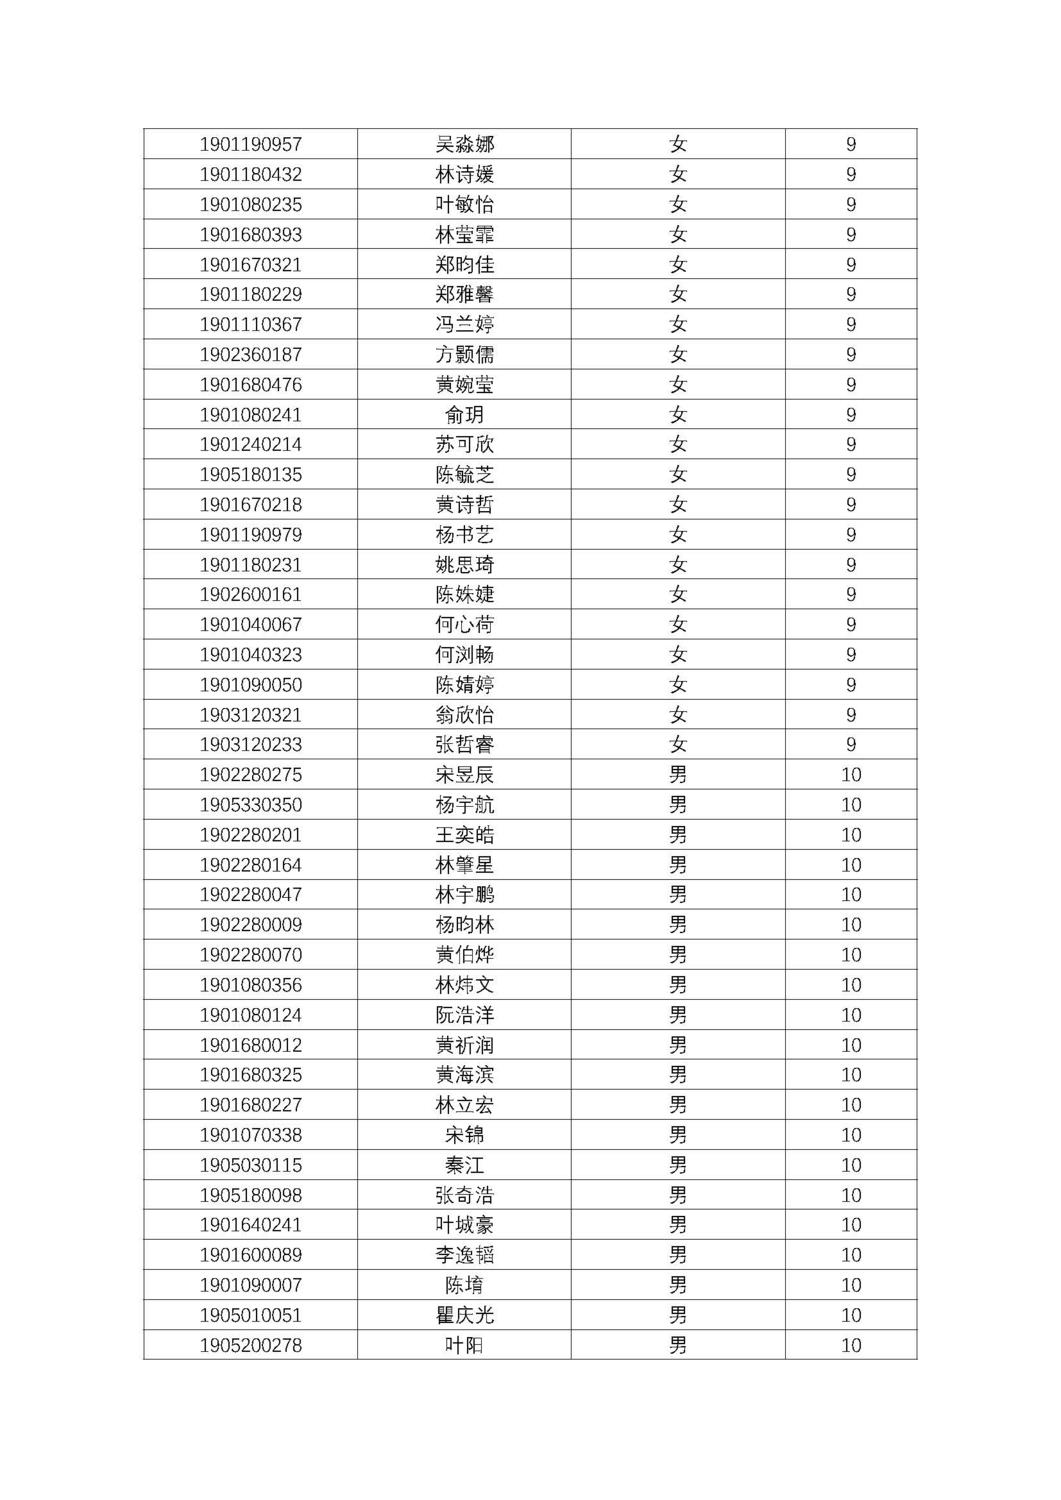 福州第十八中学2019级高一新生分班名单及报到须知_页面_12.jpg